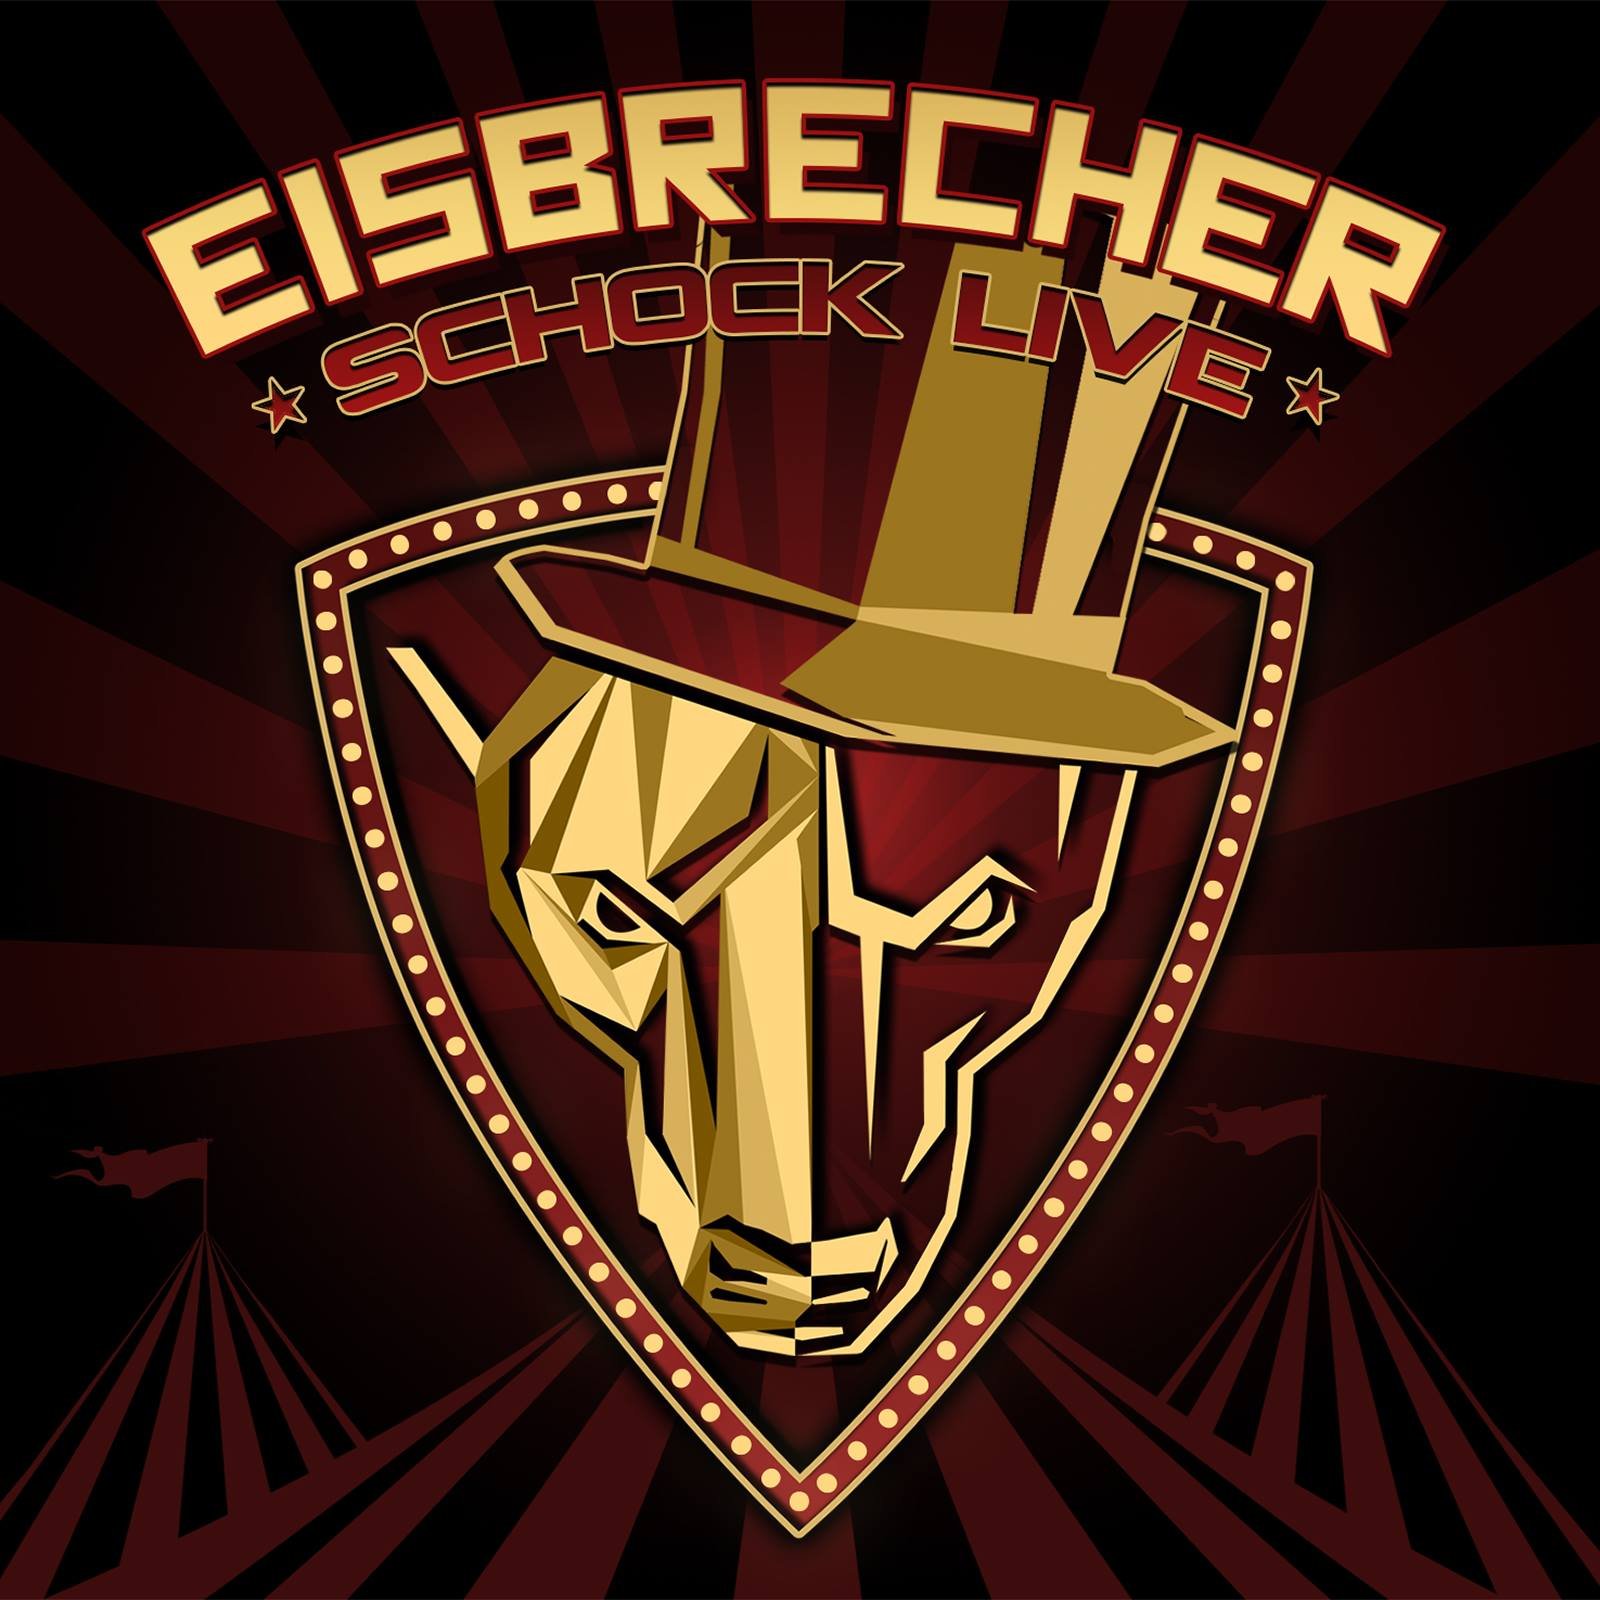 Eisbrecher rot wie. Айсбрехер группа. Eisbrecher лого. Eisbrecher Shock обложка. Eisbrecher логотип группы.